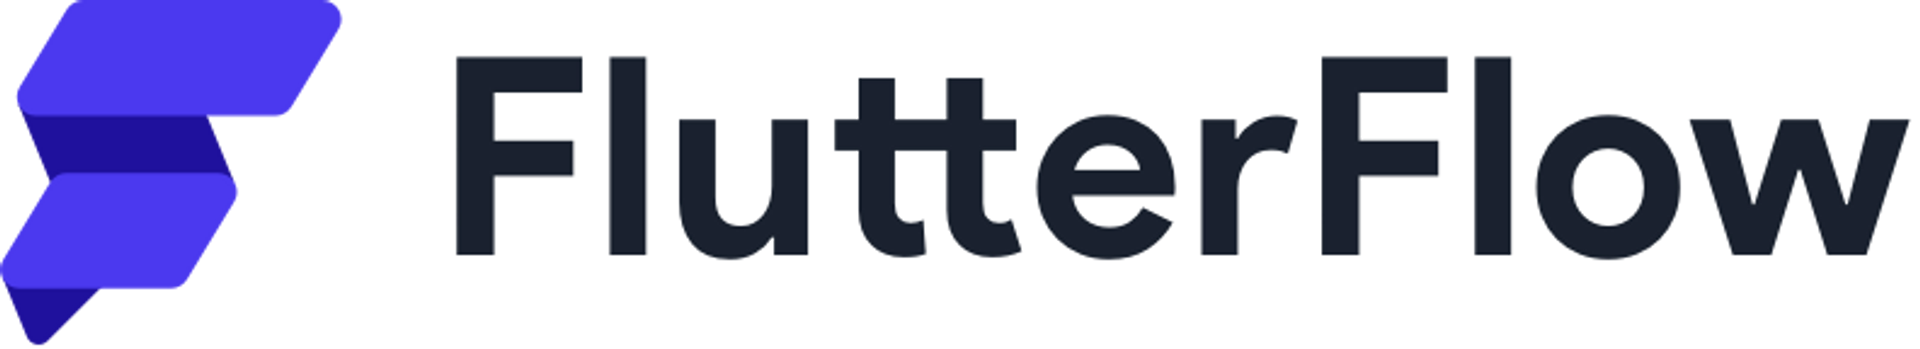 FlutterFlow logo